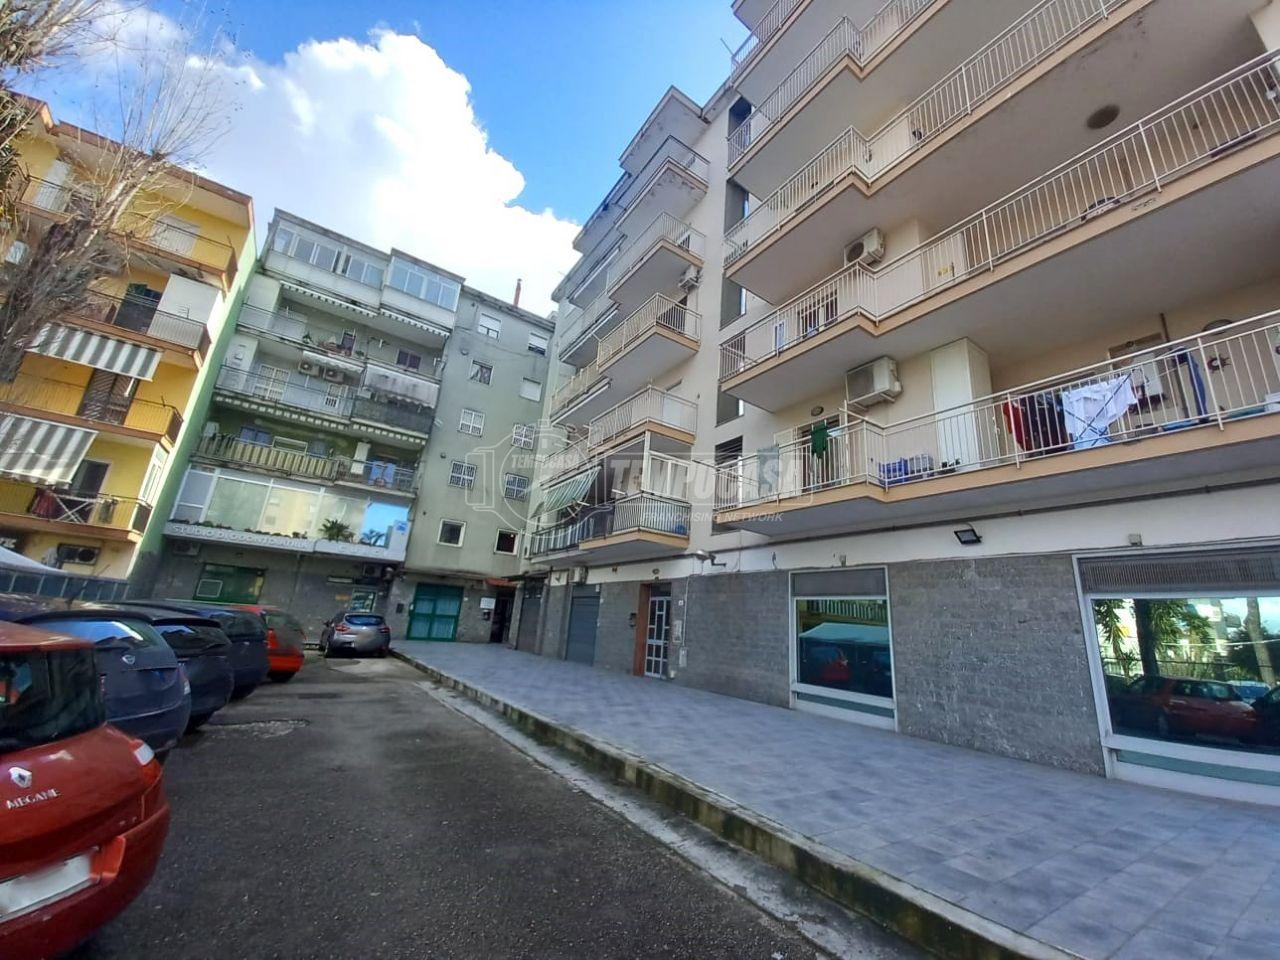 Appartamento in vendita a Villaricca